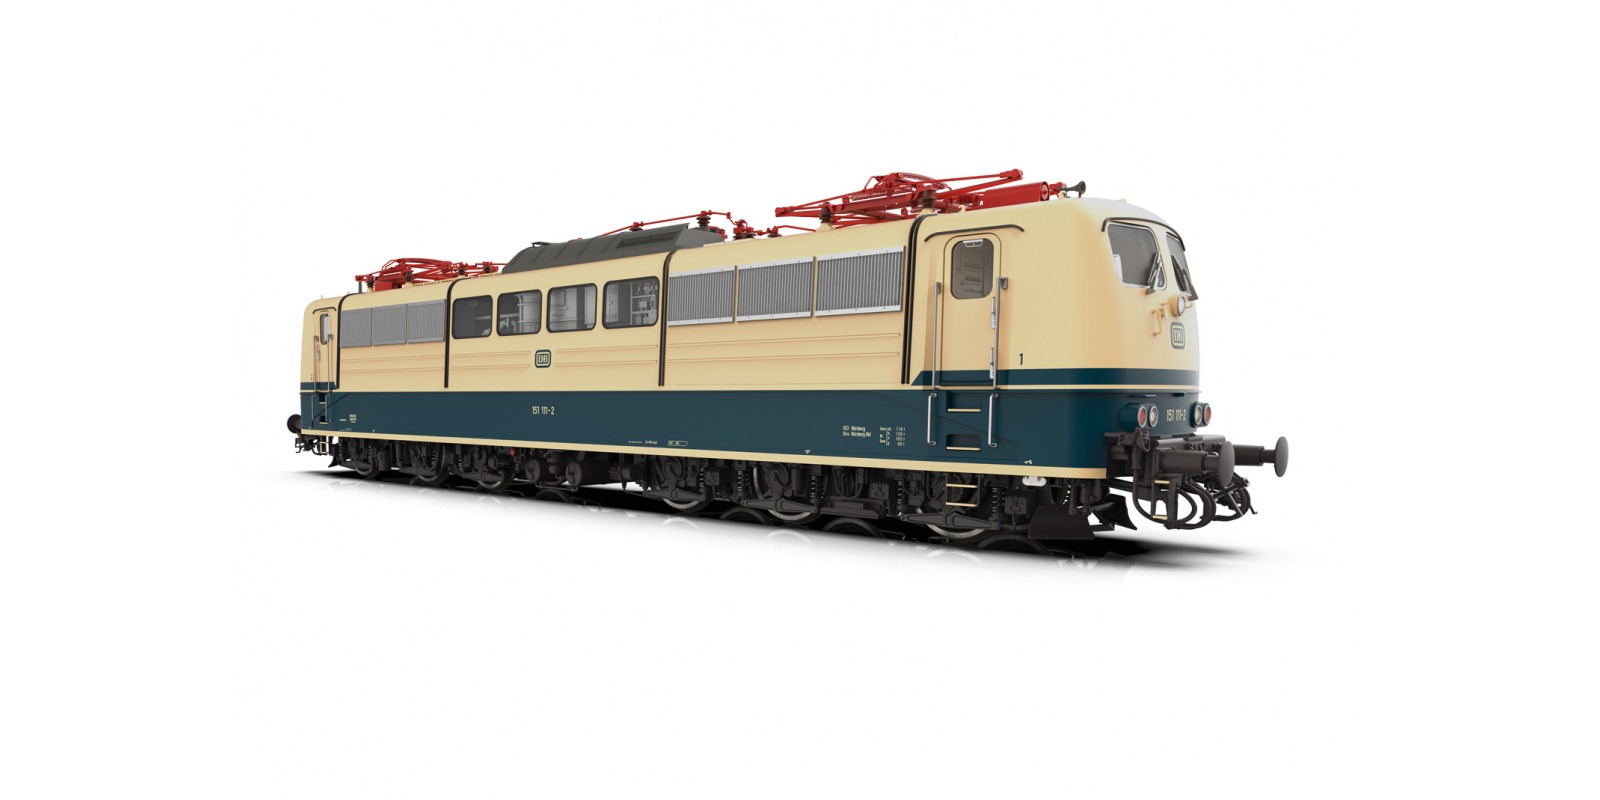 55252 Class 151 Electric Locomotive